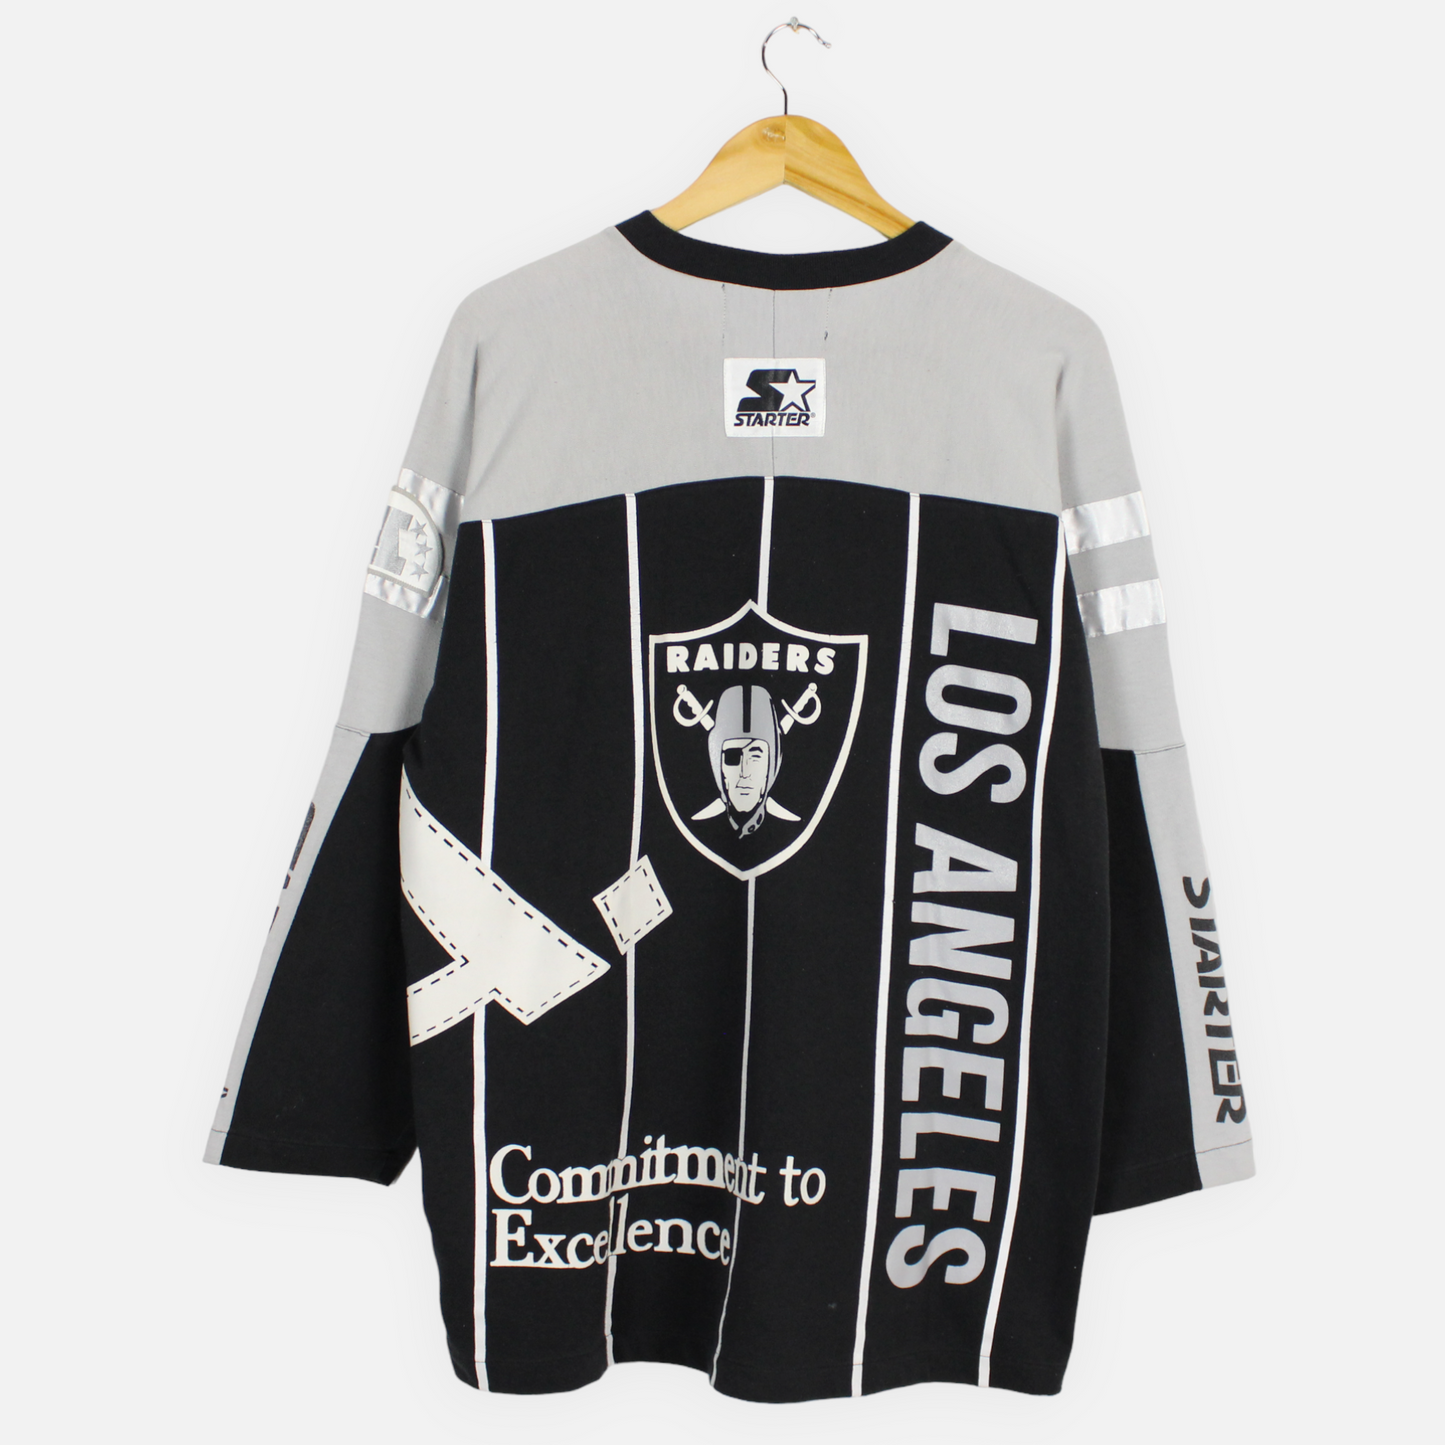 Vintage 80s Los Angeles Raiders NFL Sweatshirt - M